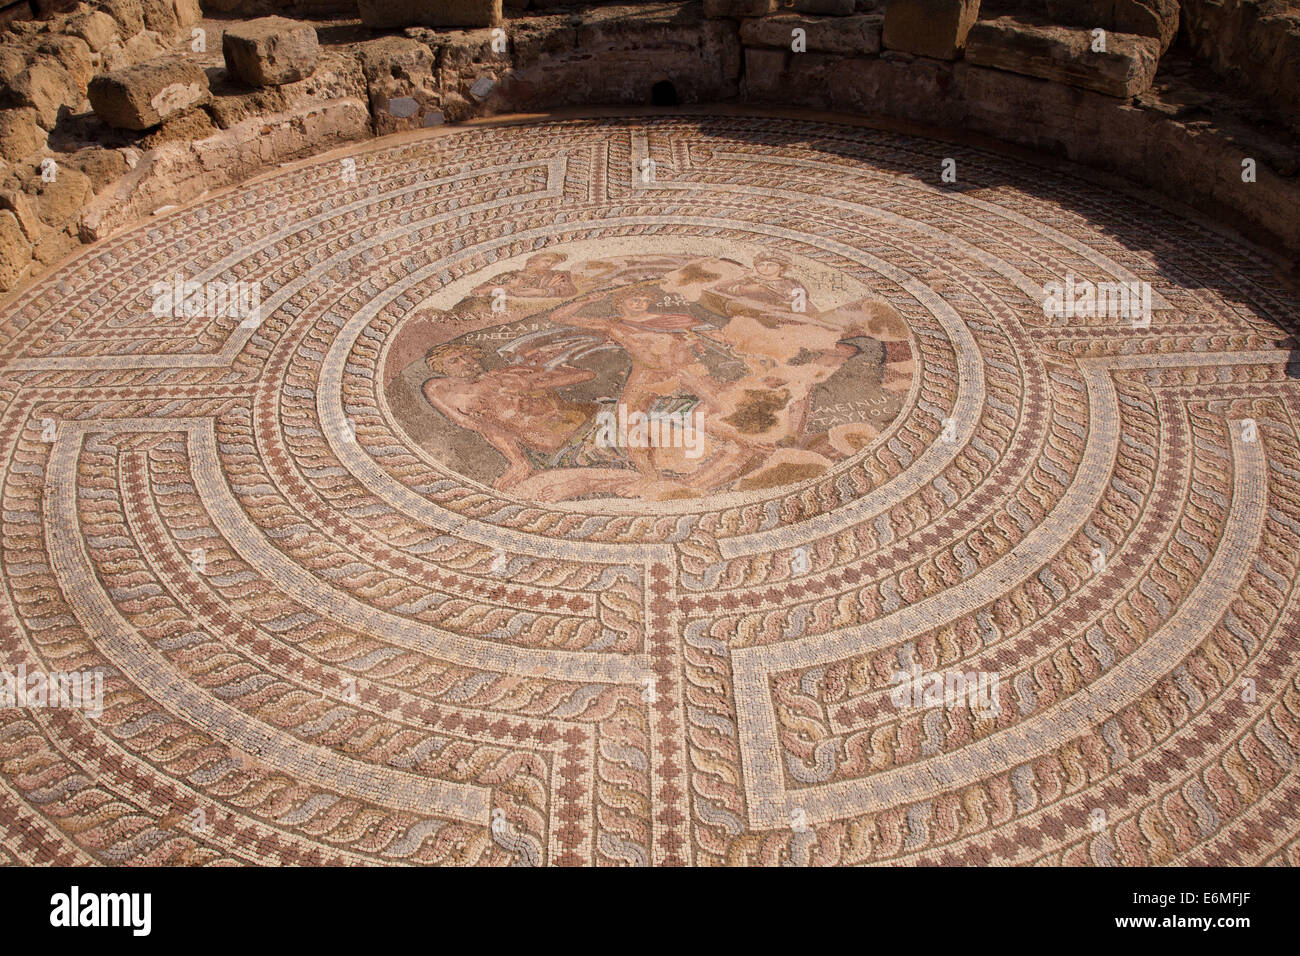 Mosaïque circulaire de Thesus tuant le minotaure entouré par le célèbre labyrinthe à l'archéologique de Paphos, Chypre Banque D'Images